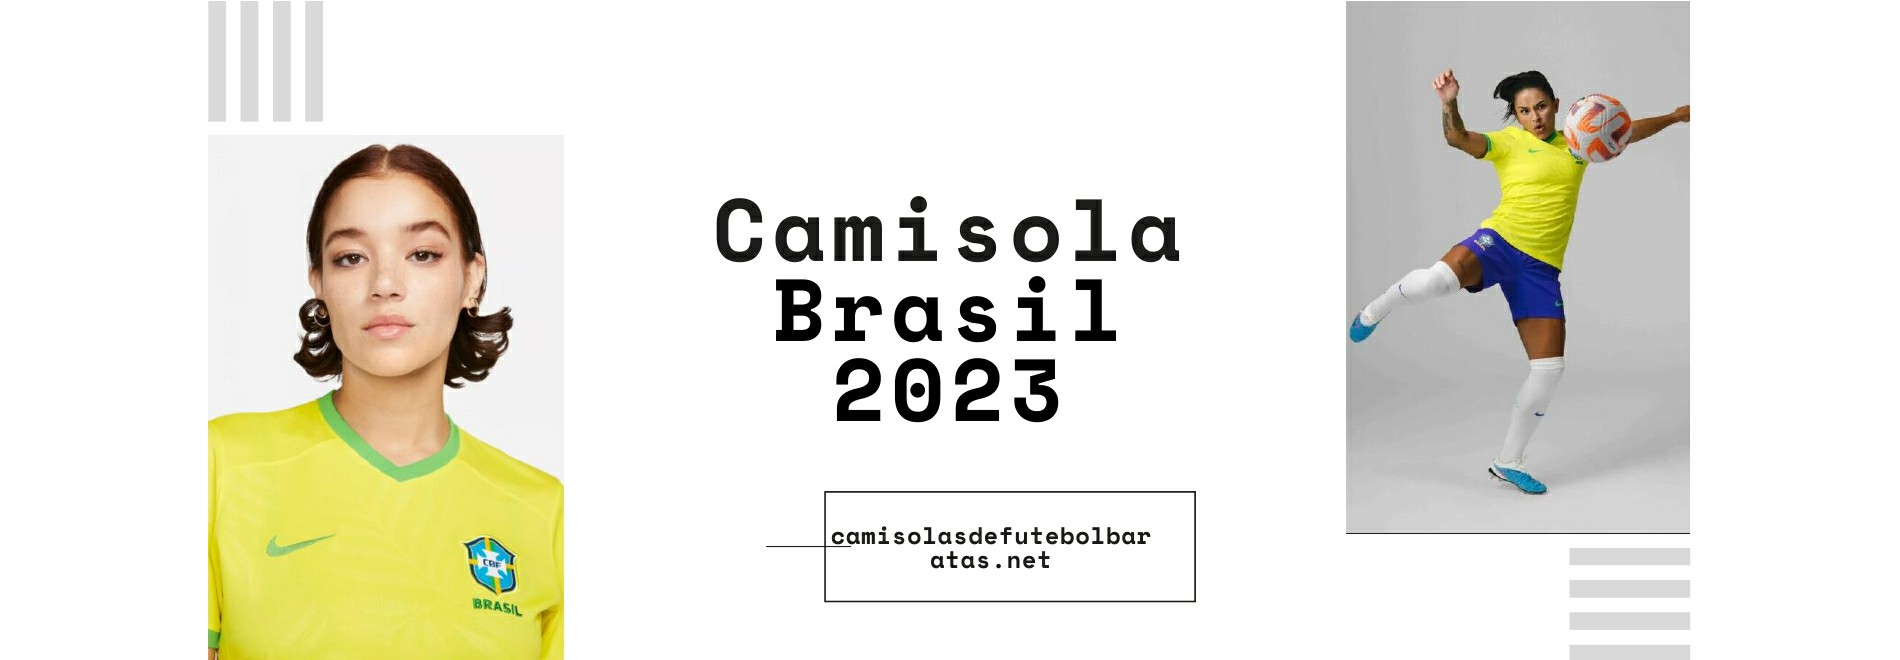 Camisola Brasil 2023-2024